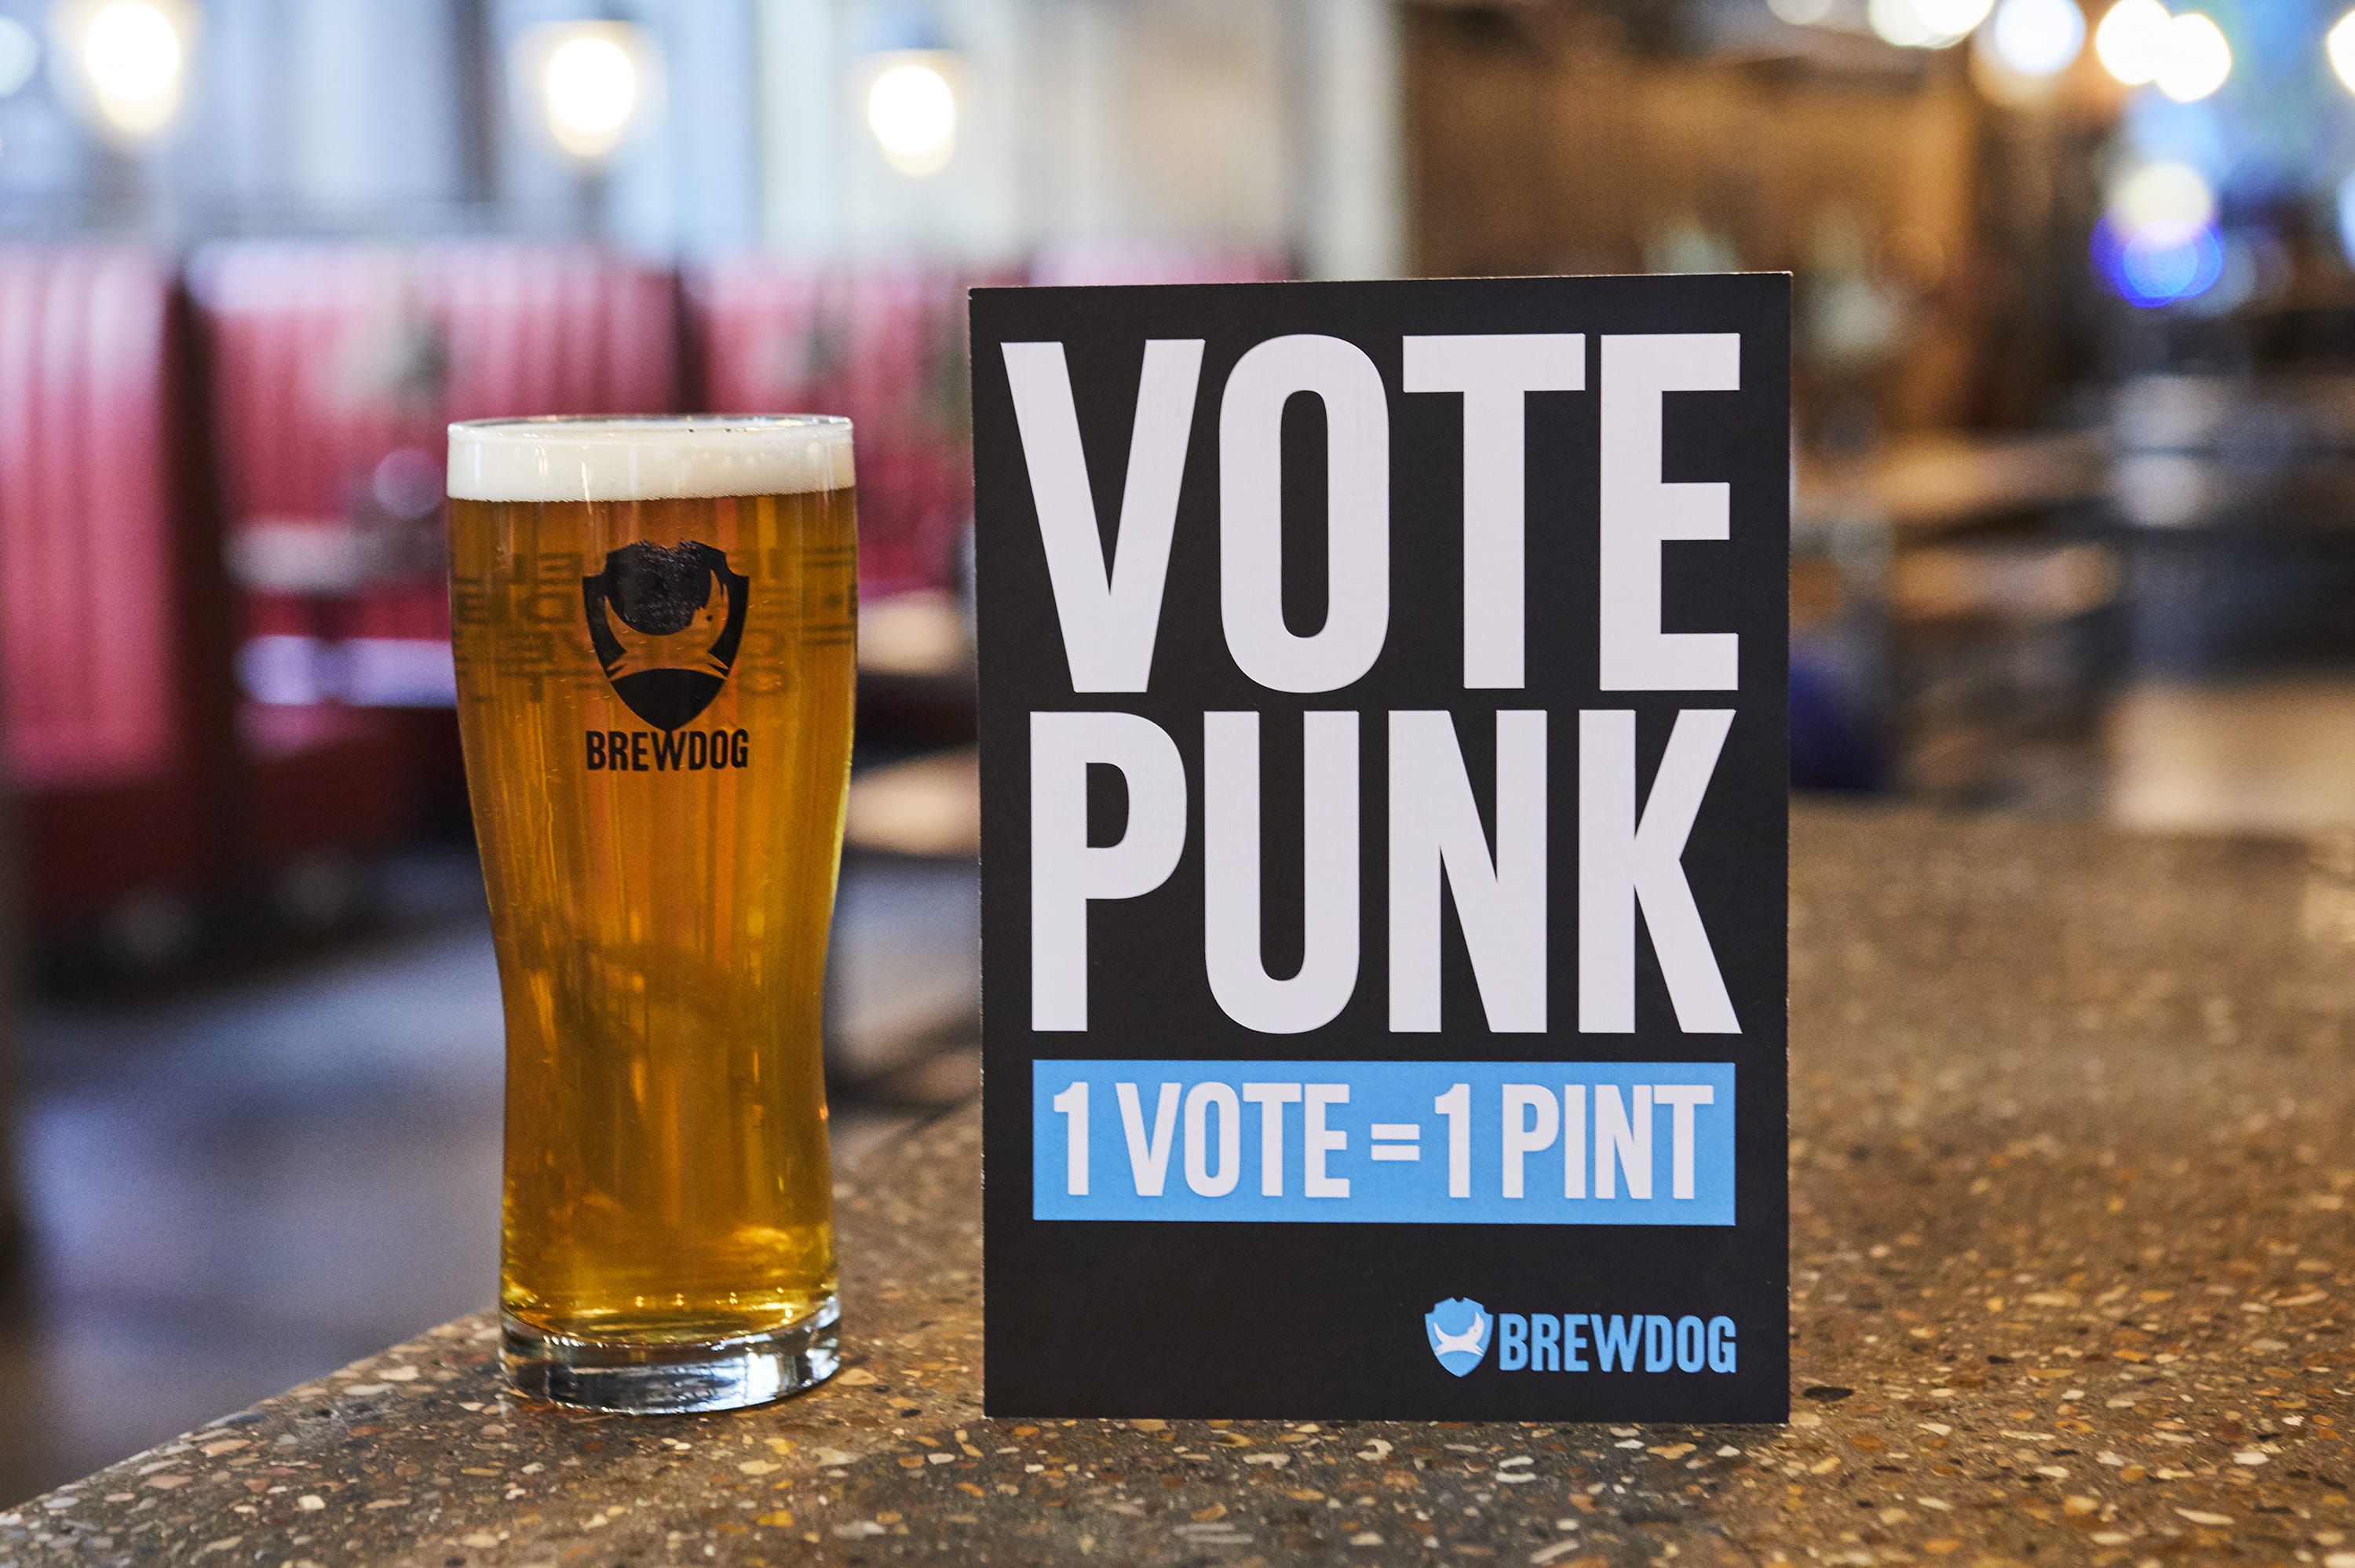 Brewdog Vote Punk